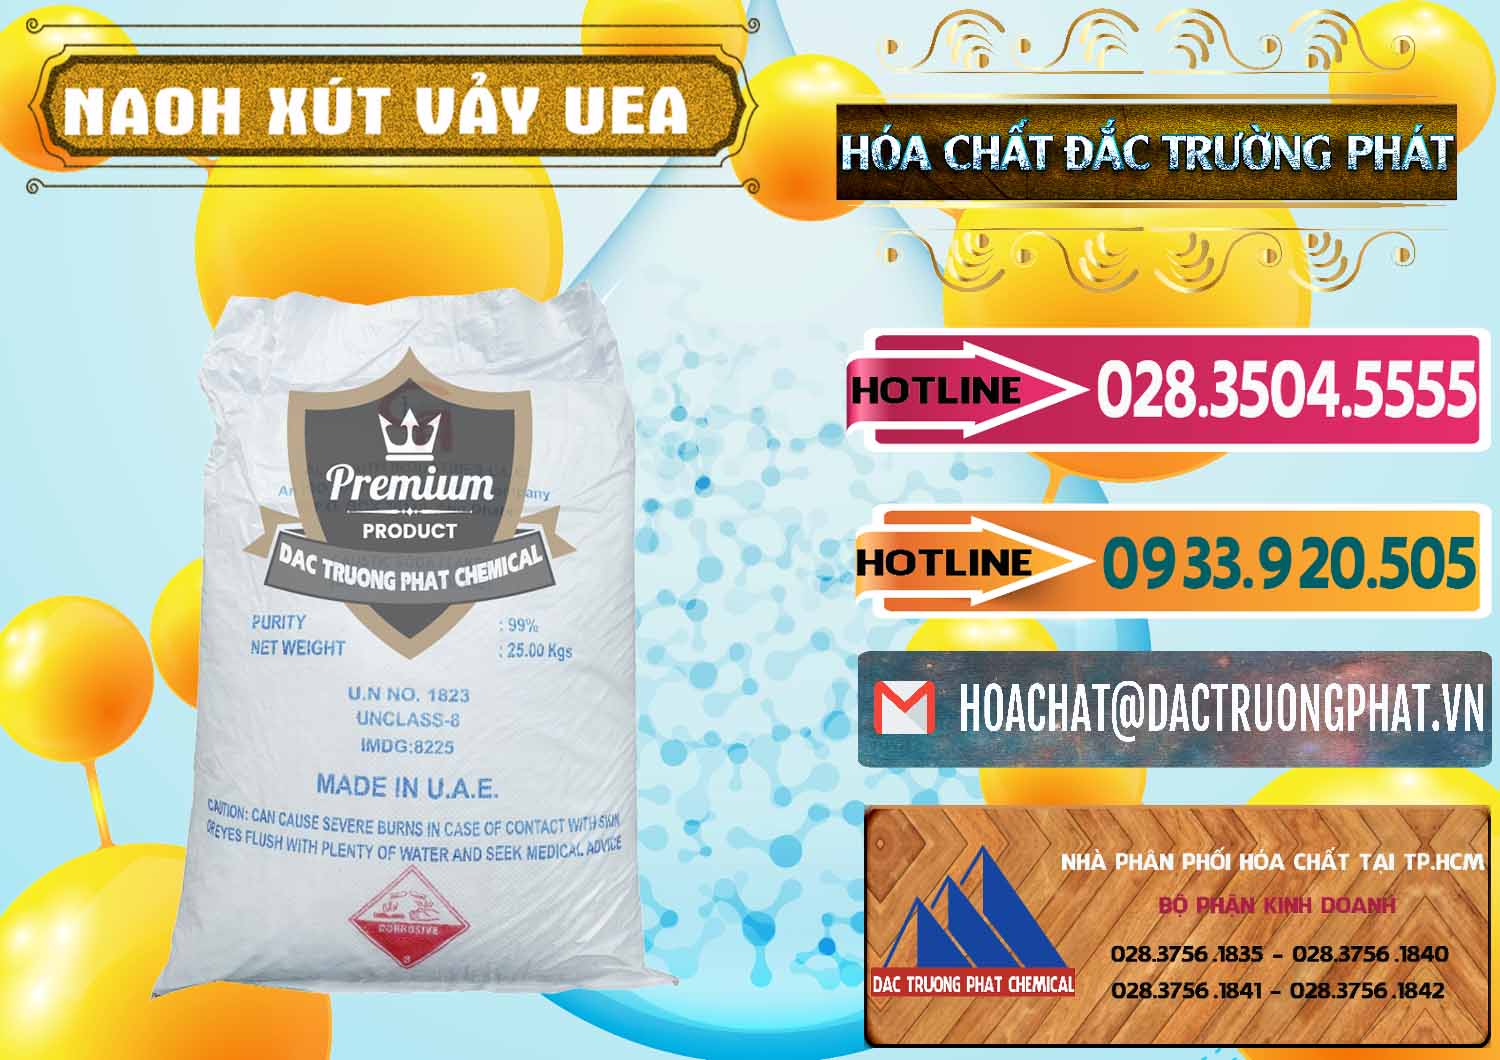 Cty kinh doanh & bán Xút Vảy - NaOH Vảy UAE Iran - 0432 - Đơn vị kinh doanh ( phân phối ) hóa chất tại TP.HCM - dactruongphat.vn